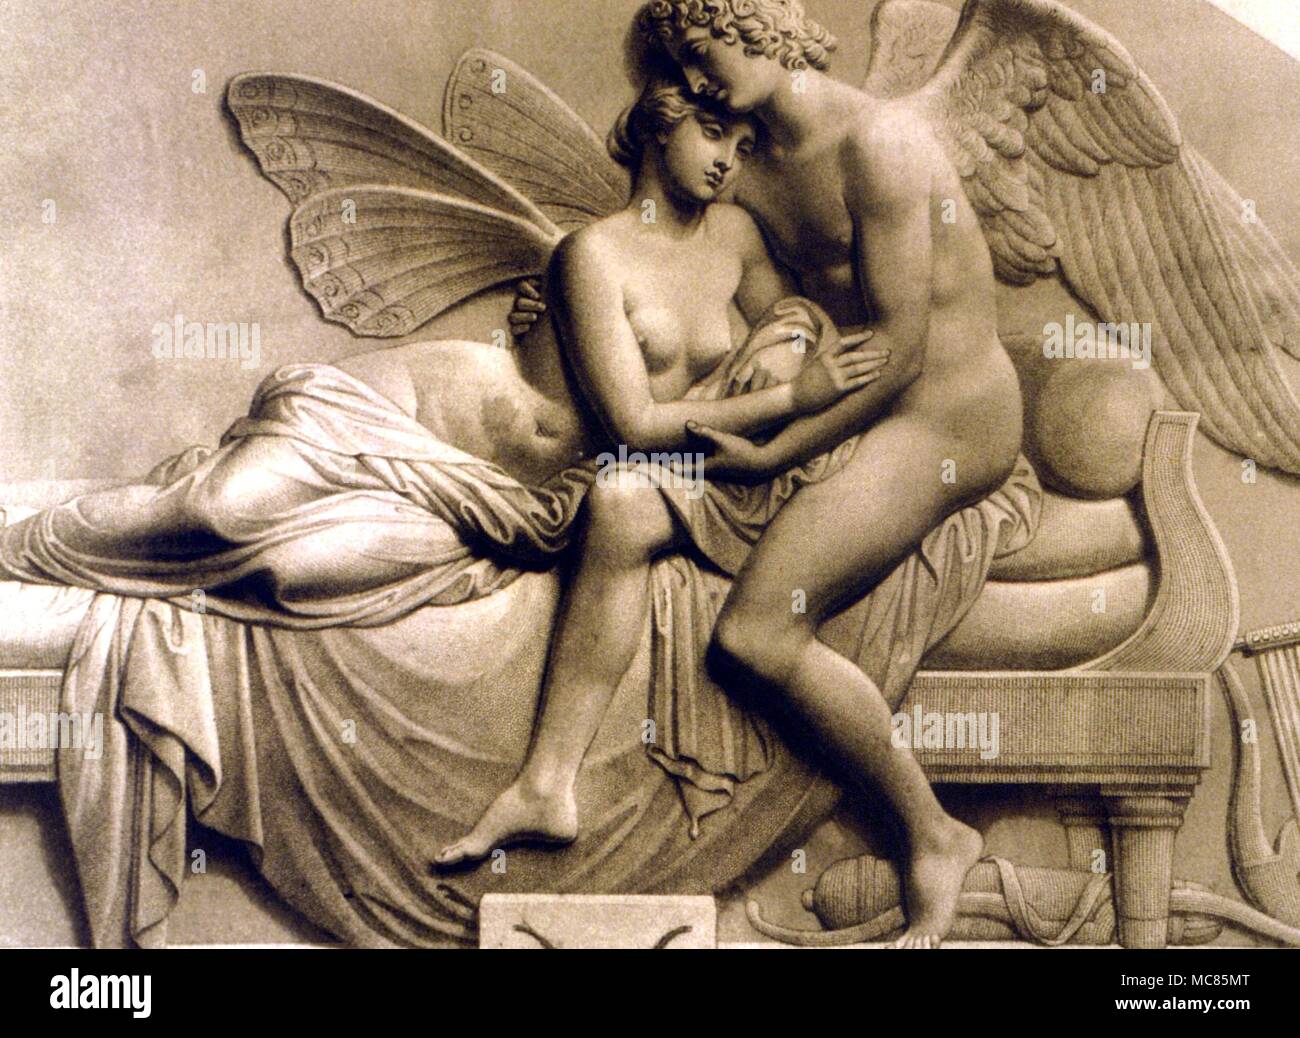 La mitologia greca Amore e Psiche incisione di Roffe dopo il bassorilievo scultura di J Gibson di " Amore e Psiche", in precedenza nella raccolta della regina Victoria Foto Stock